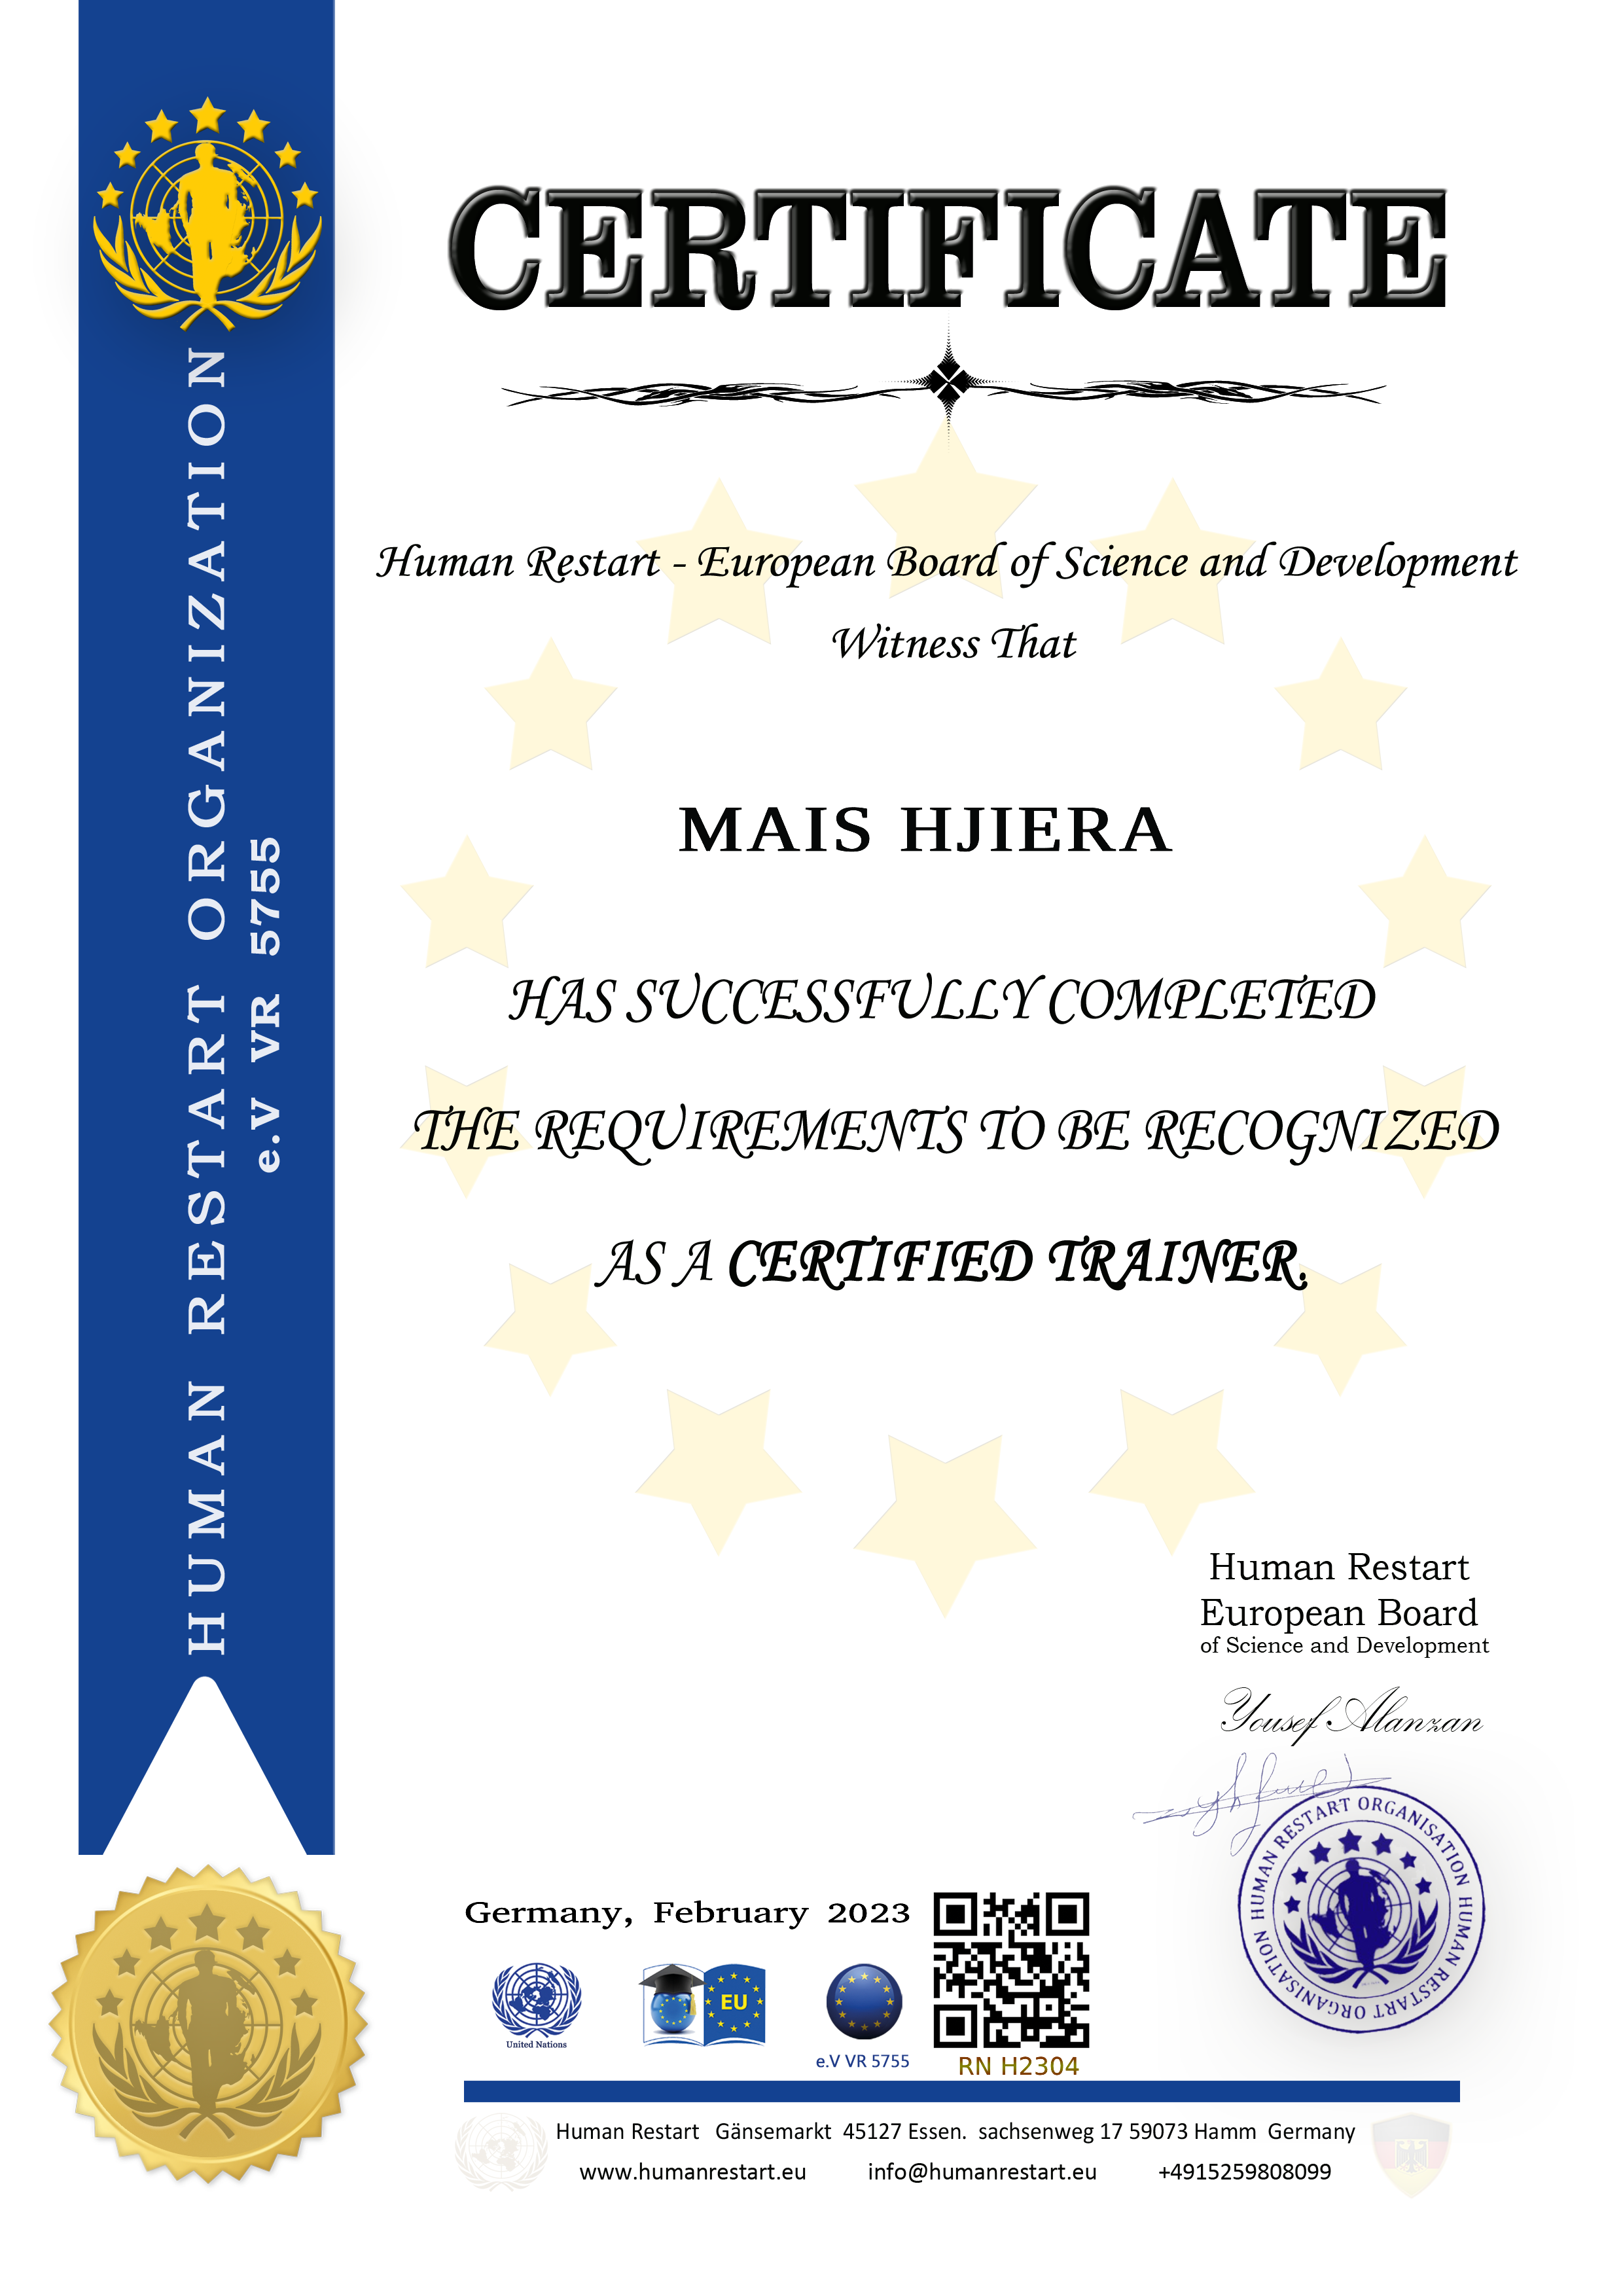 شهادة اعتماد ميس حجيرة مدرب معتمد من البورد الأوروبي للعلوم والتنمية هيومان رستارت في المانيا